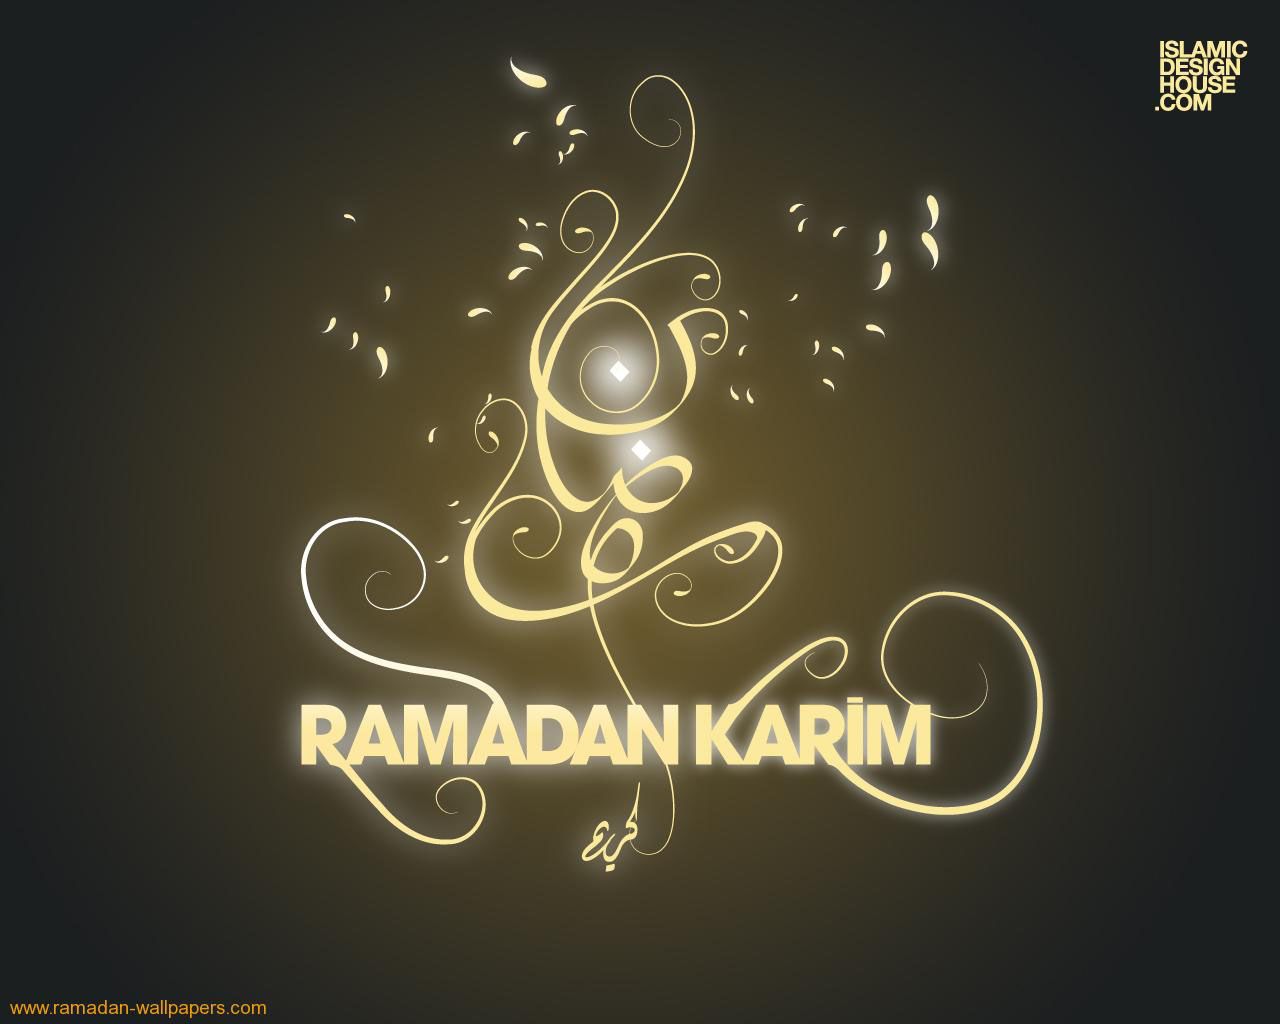 Ramadan Mubarak Wallpaper. High Definition Wallpaper. Cool